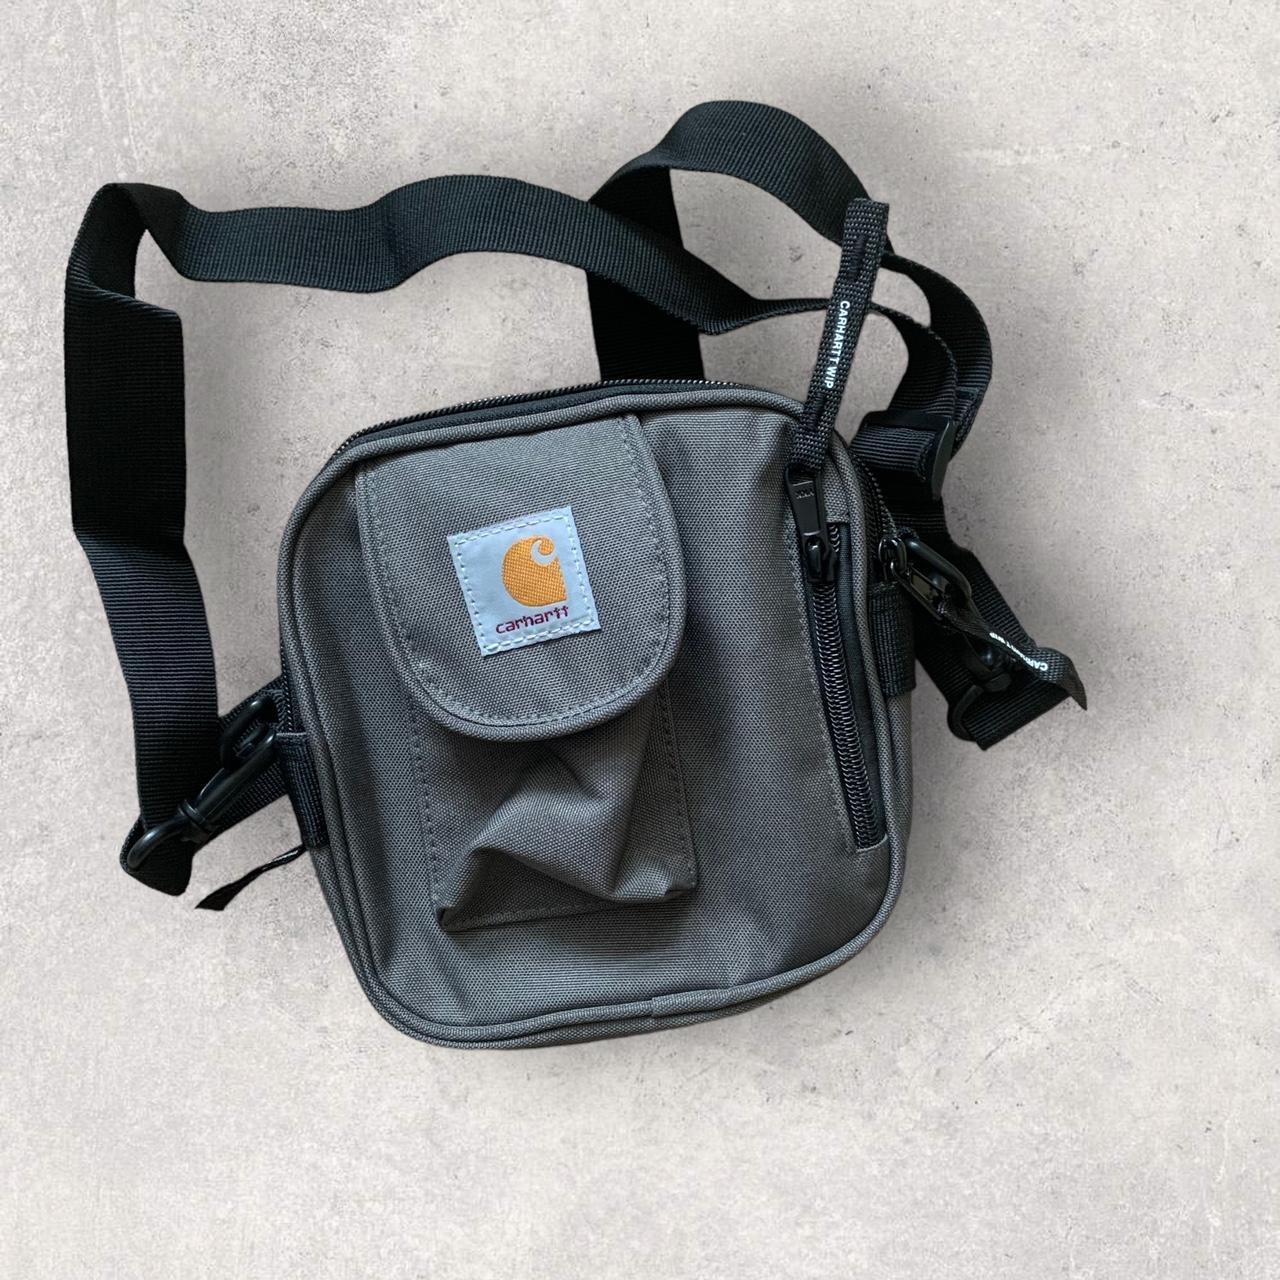 Carhartt WIP grey side bag - Depop